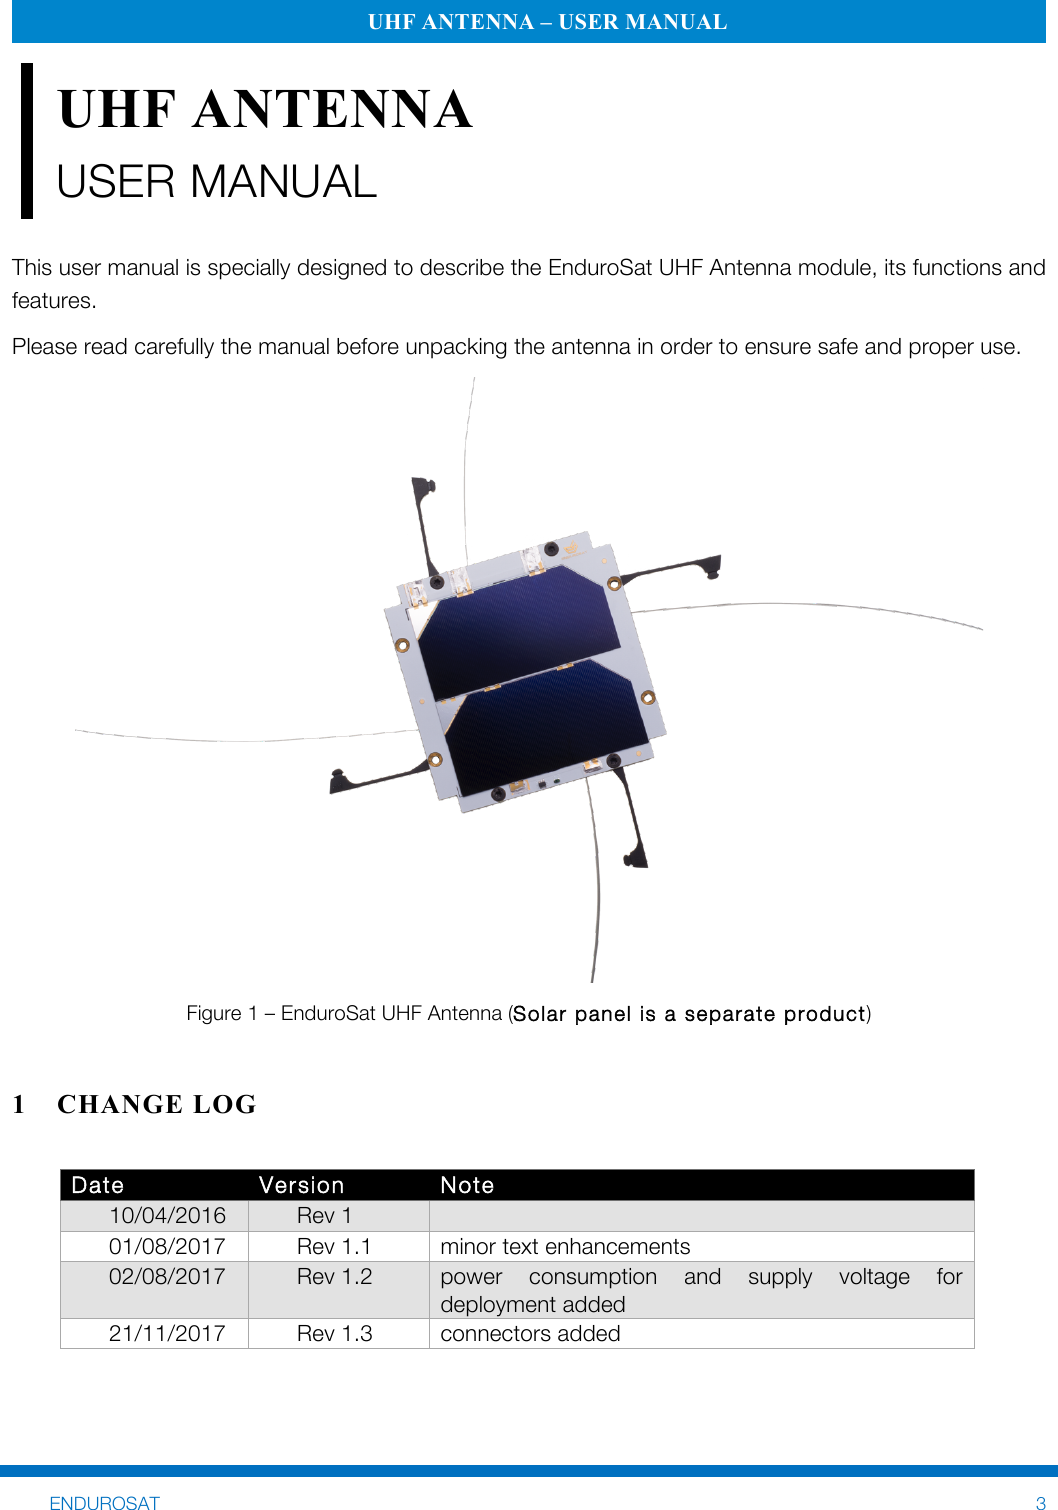 Page 3 of 11 - UHF Antenna User Manual Rev1.3